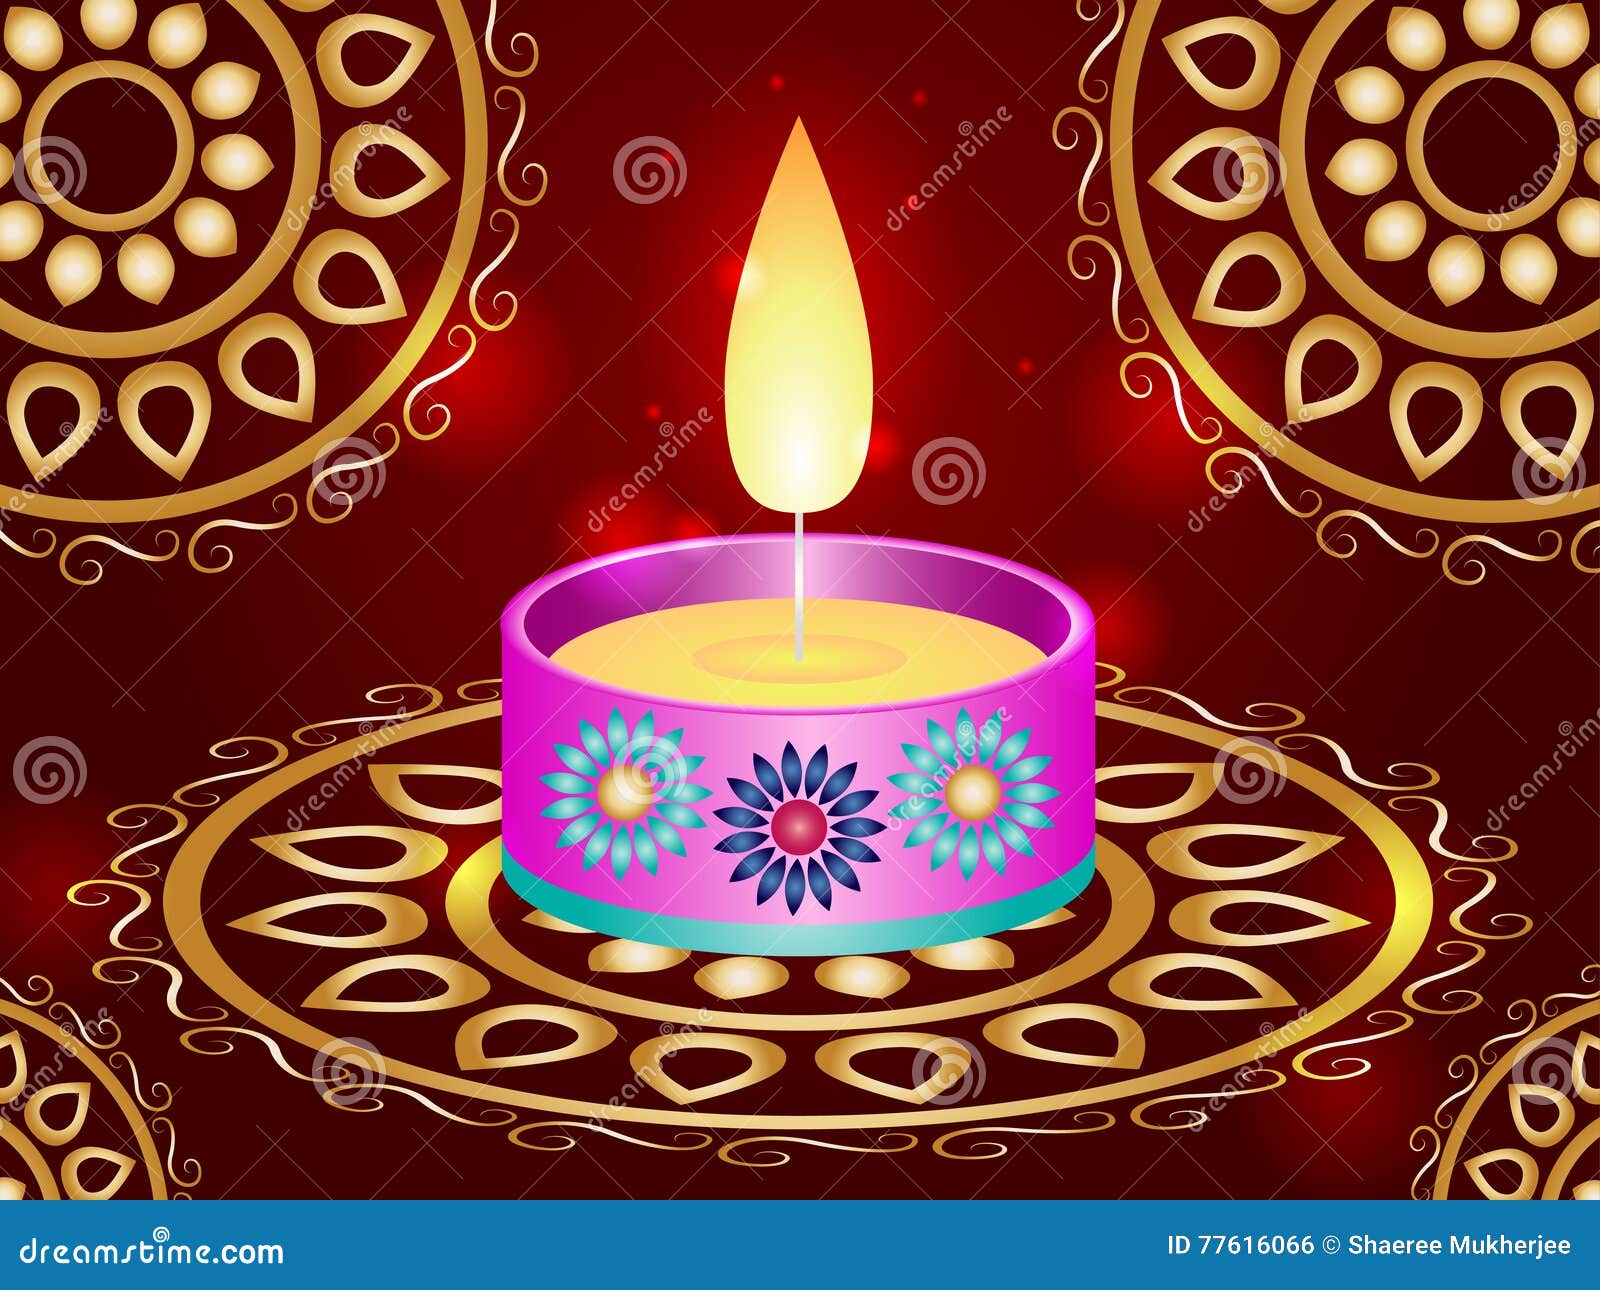 Diwali Candle Wallpaper stock illustration. Illustration of floral ...